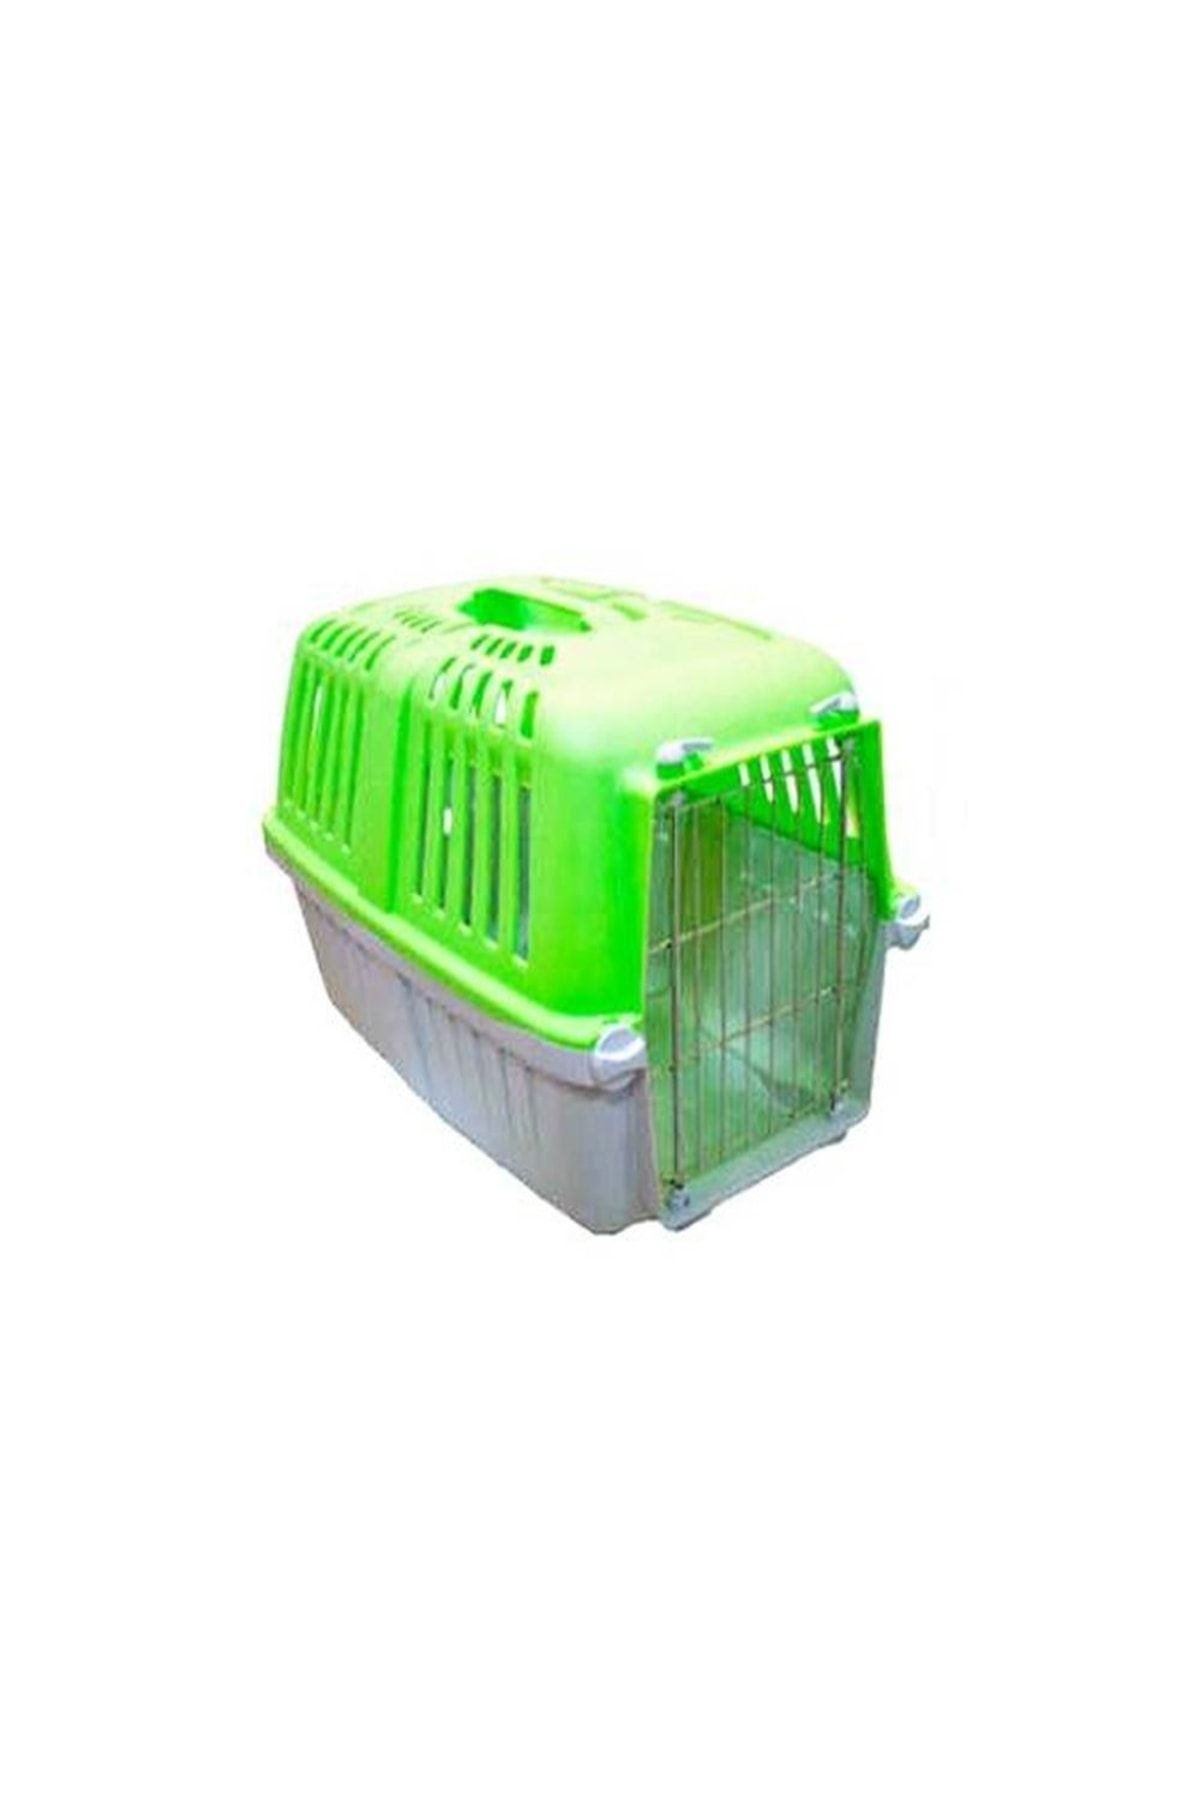 Mio Demir Kapılı Kedi Köpek Taşıma Çantası Kabı 32 X 49 X 33cm Renk-yeşil